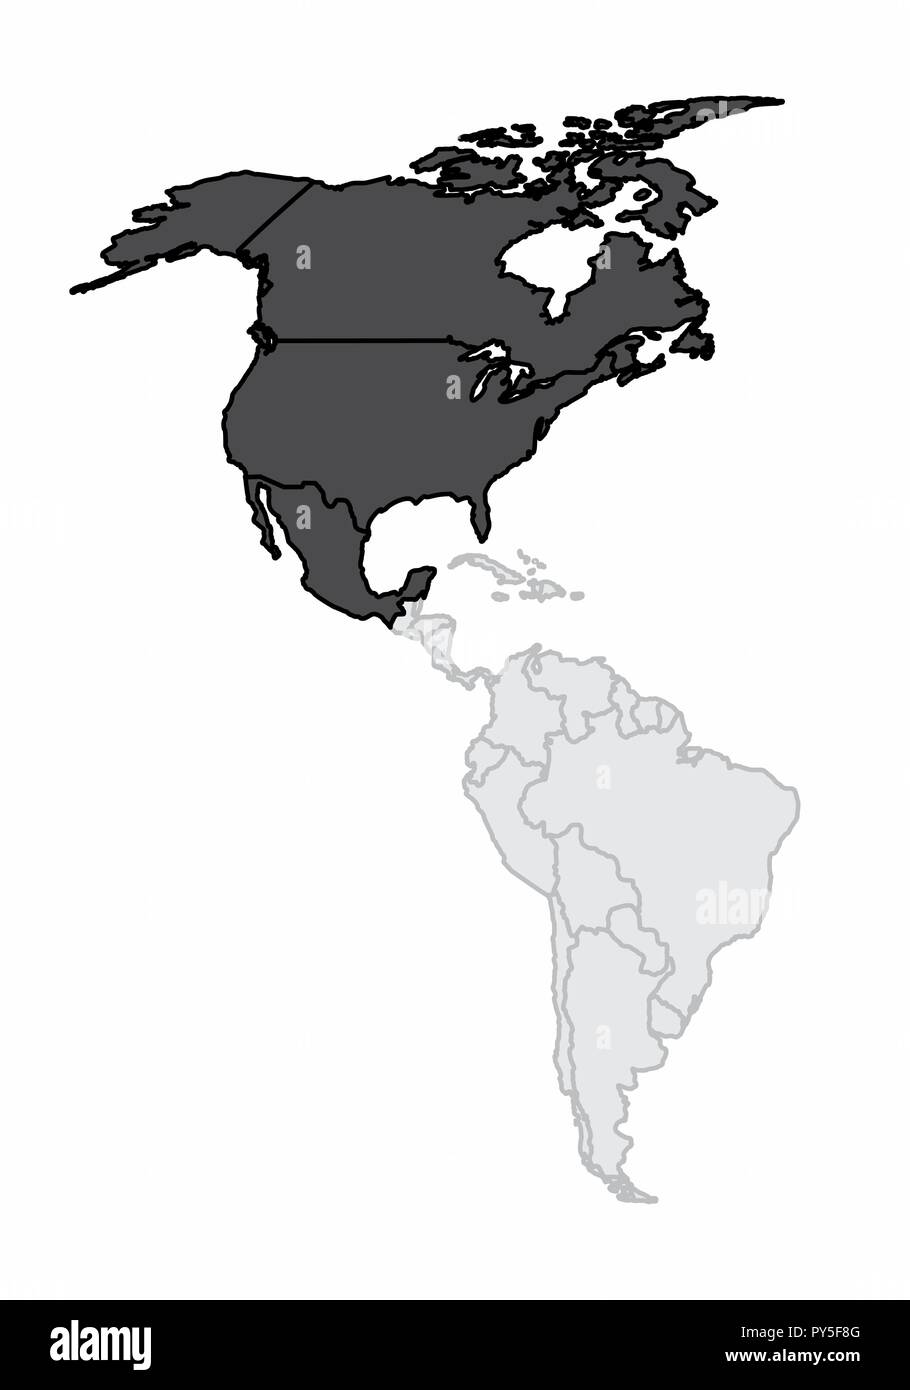 Eine Karte des amerikanischen Kontinents mit dem Nordamerika hervorgehoben Stock Vektor